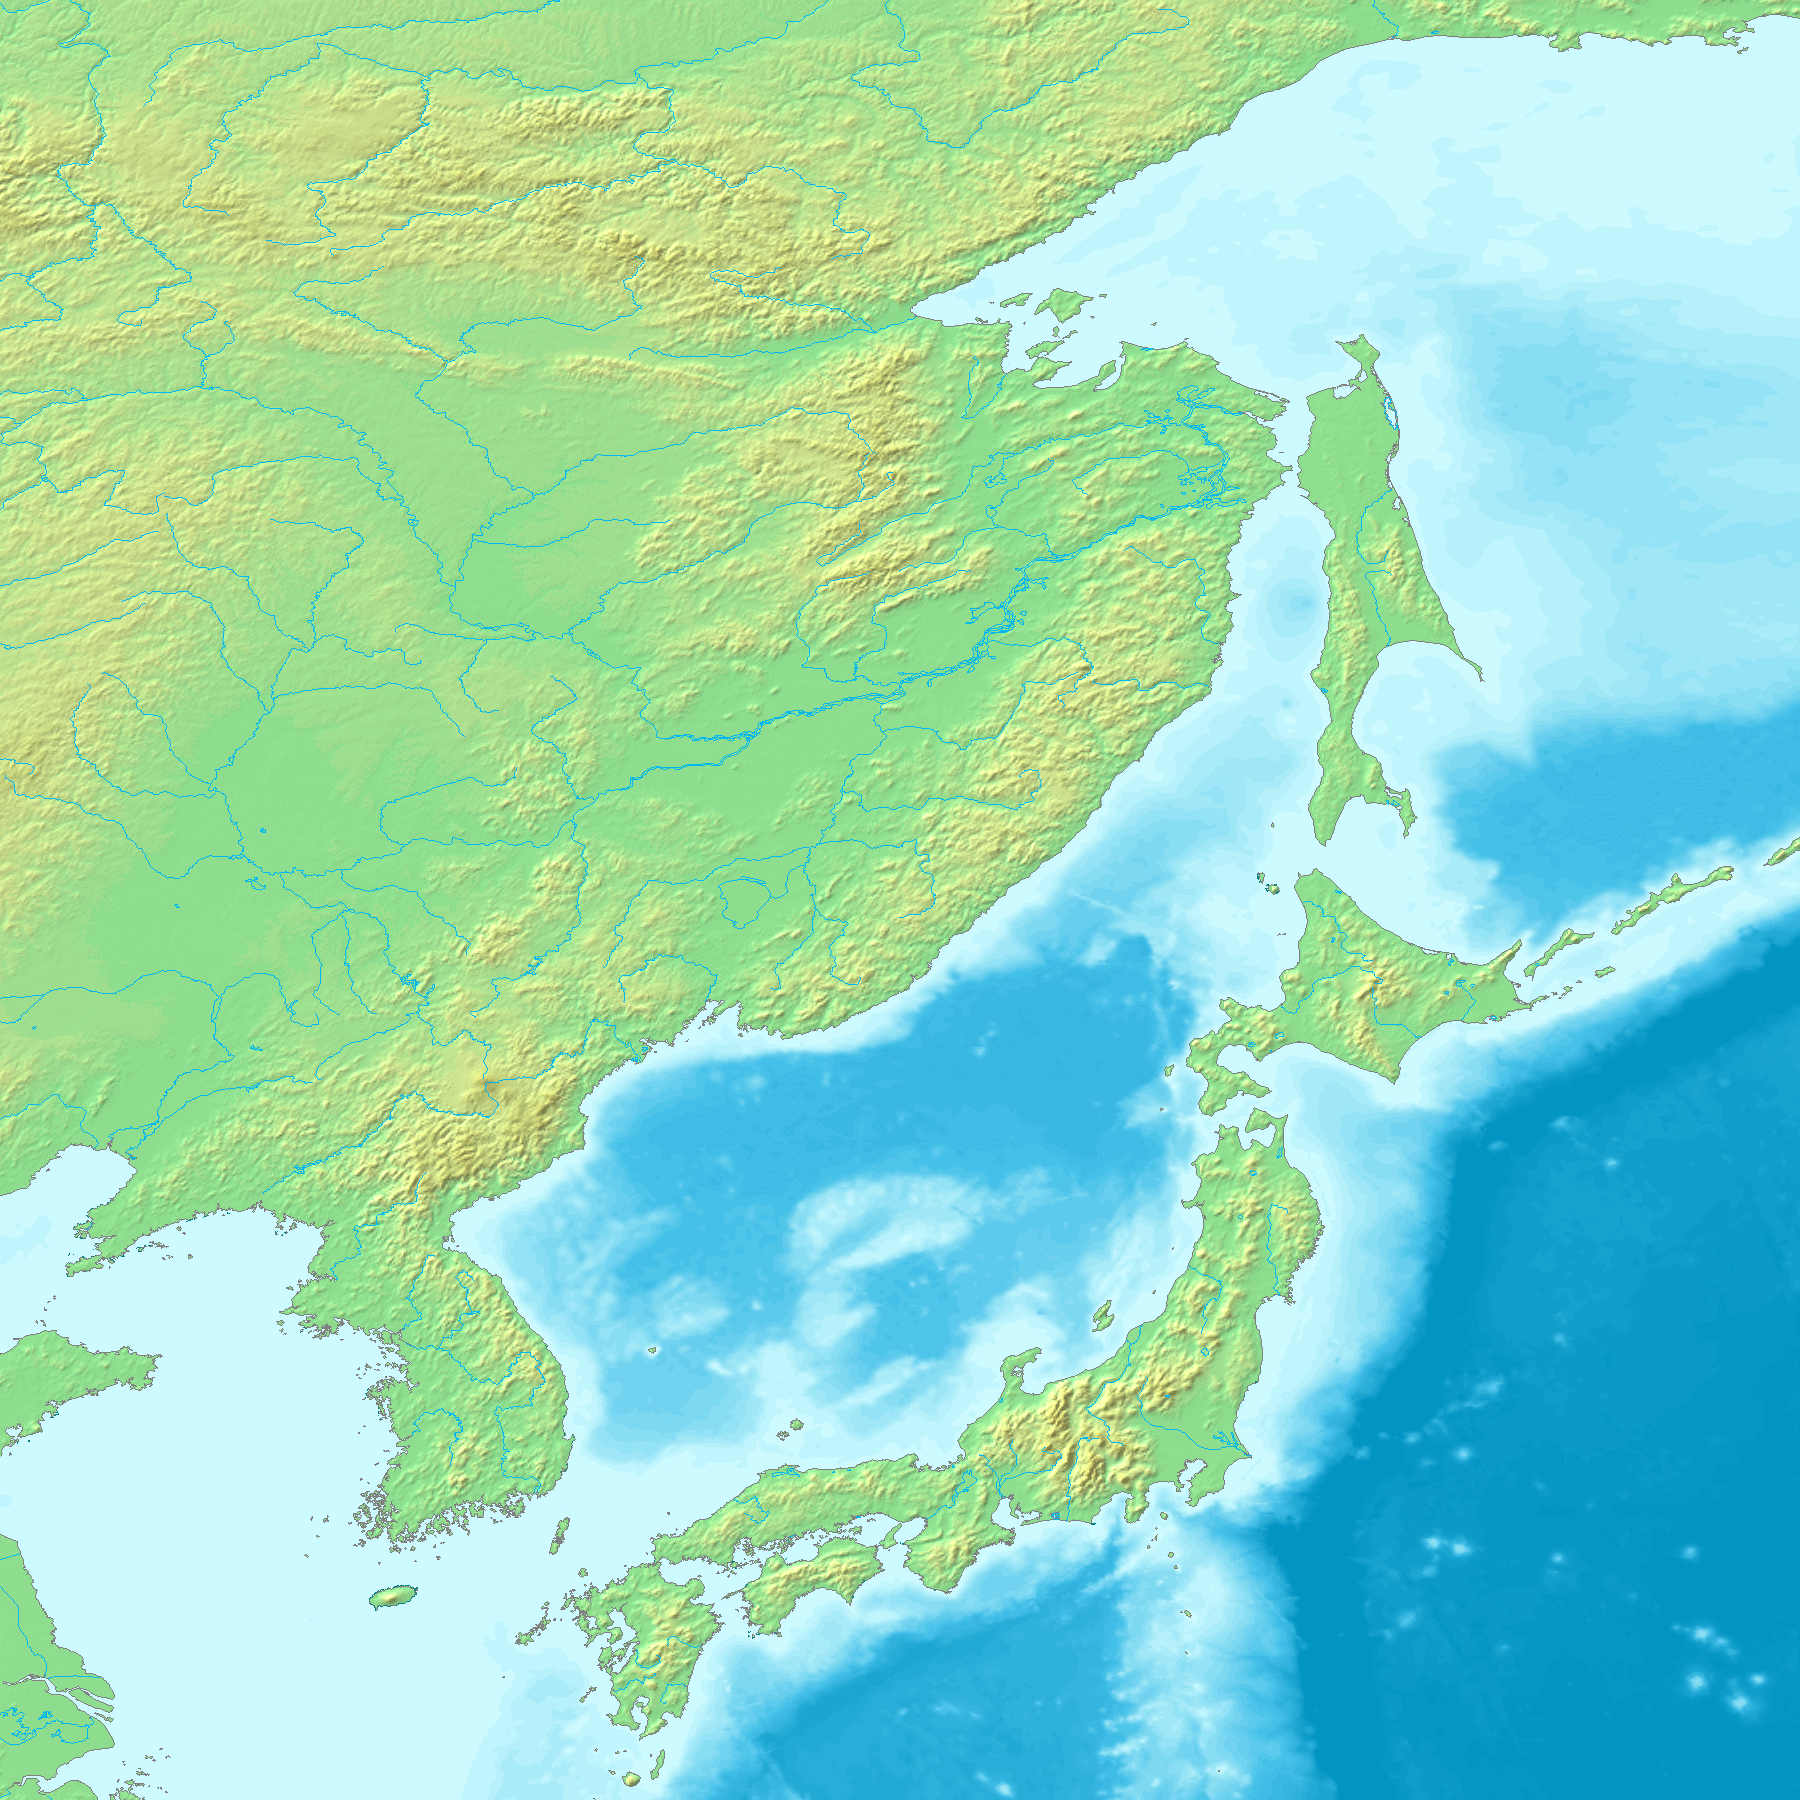 японское море на карте